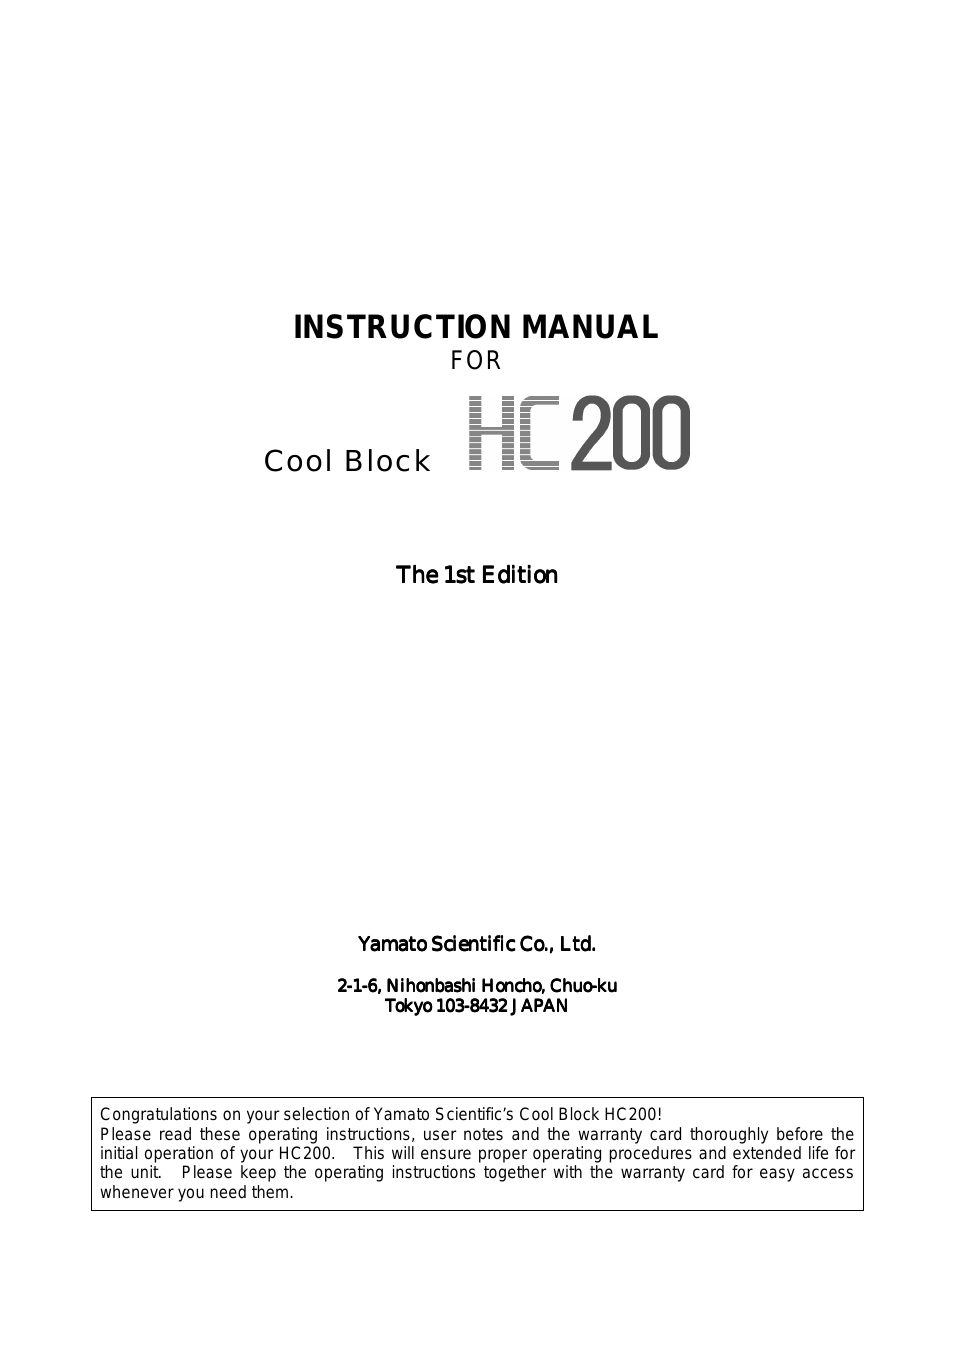 HC200 Cool Block